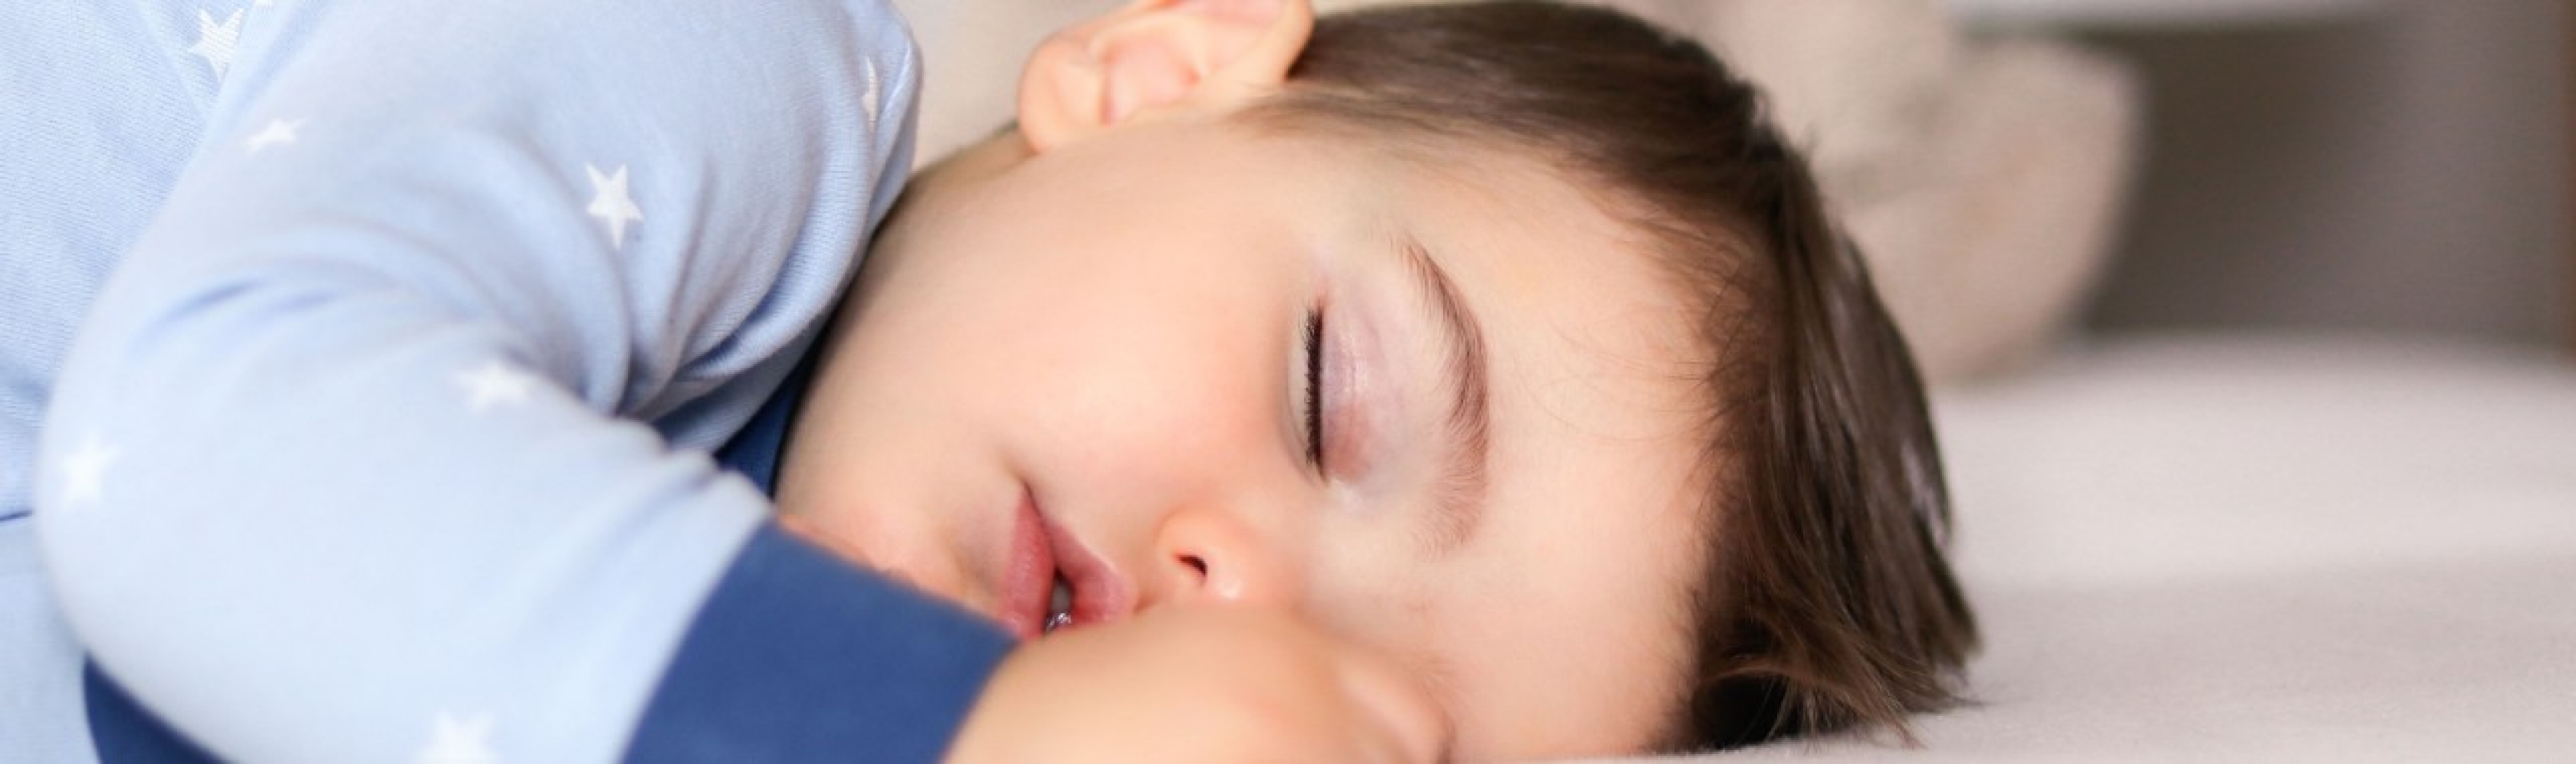 Ein kleines Kind geniesst einen gesunden Schlaf. Mehr als ein Drittel unseres Lebens verbringen wir schlafend, und unser Schlafrhythmus verändert sich im Laufe unseres Lebens stark.